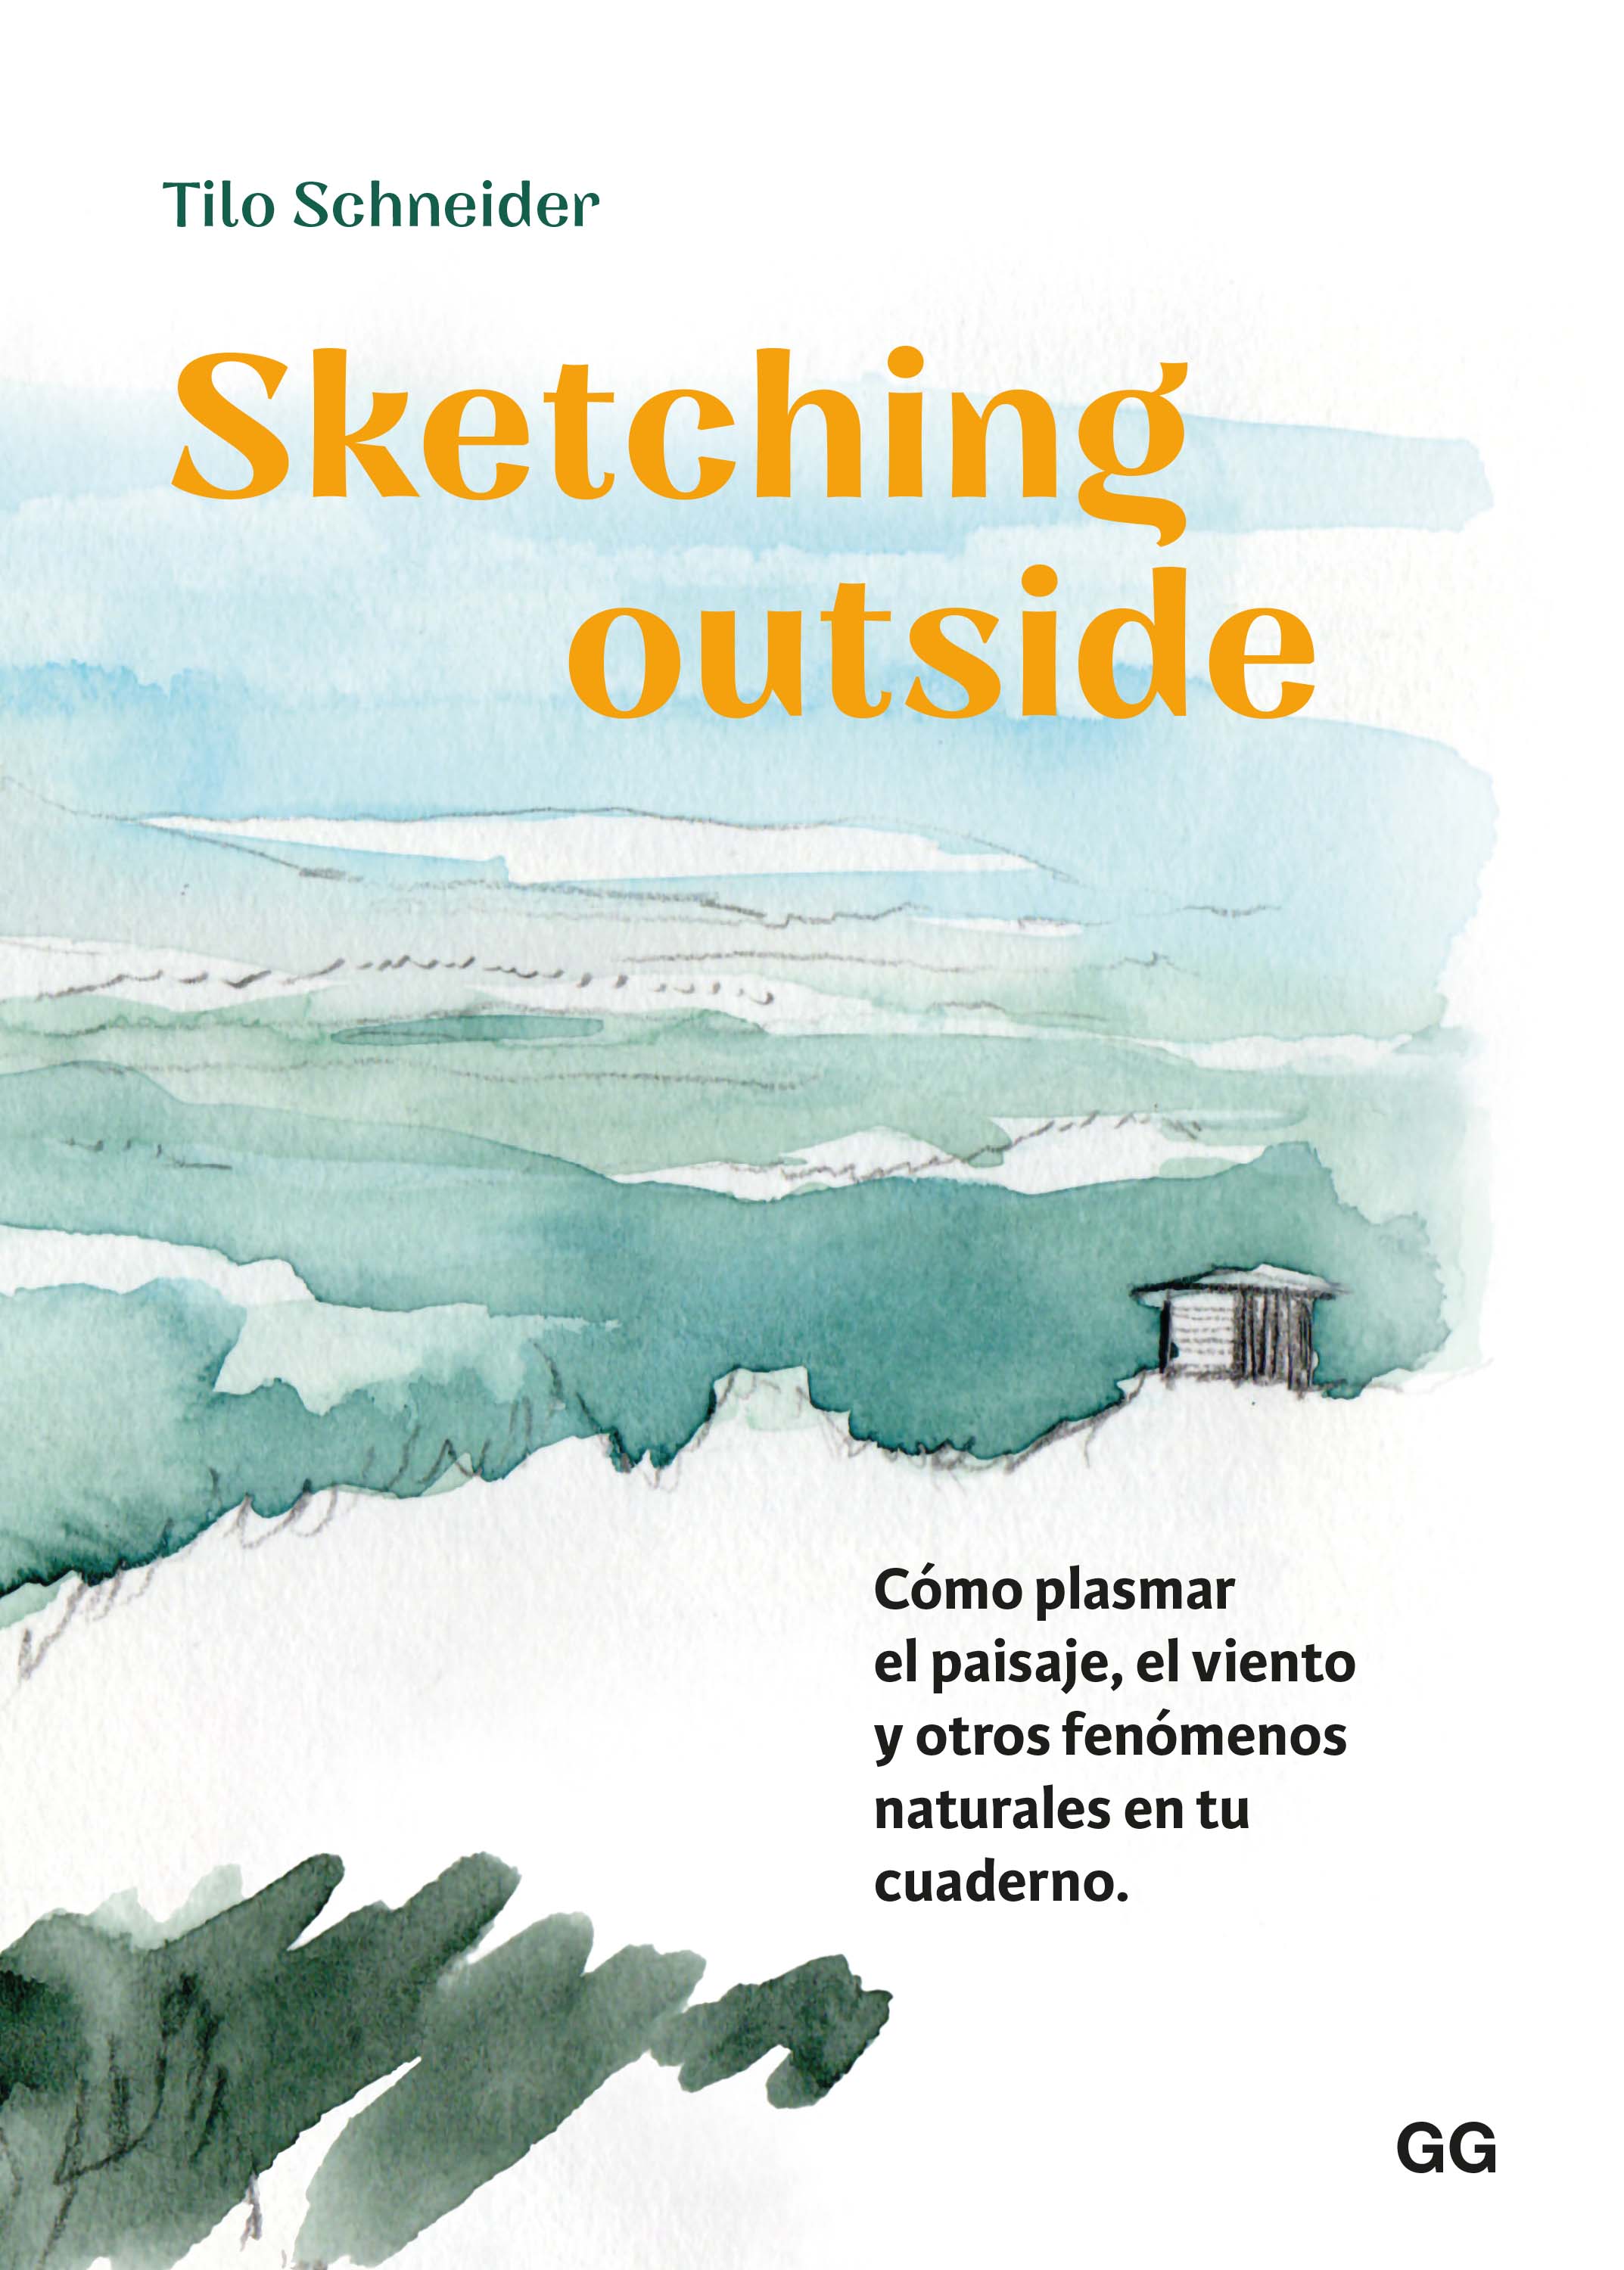 Sketching outside   «Cómo plasmar el paisaje, el viento y otros fenómenos naturales en tu cuaderno»